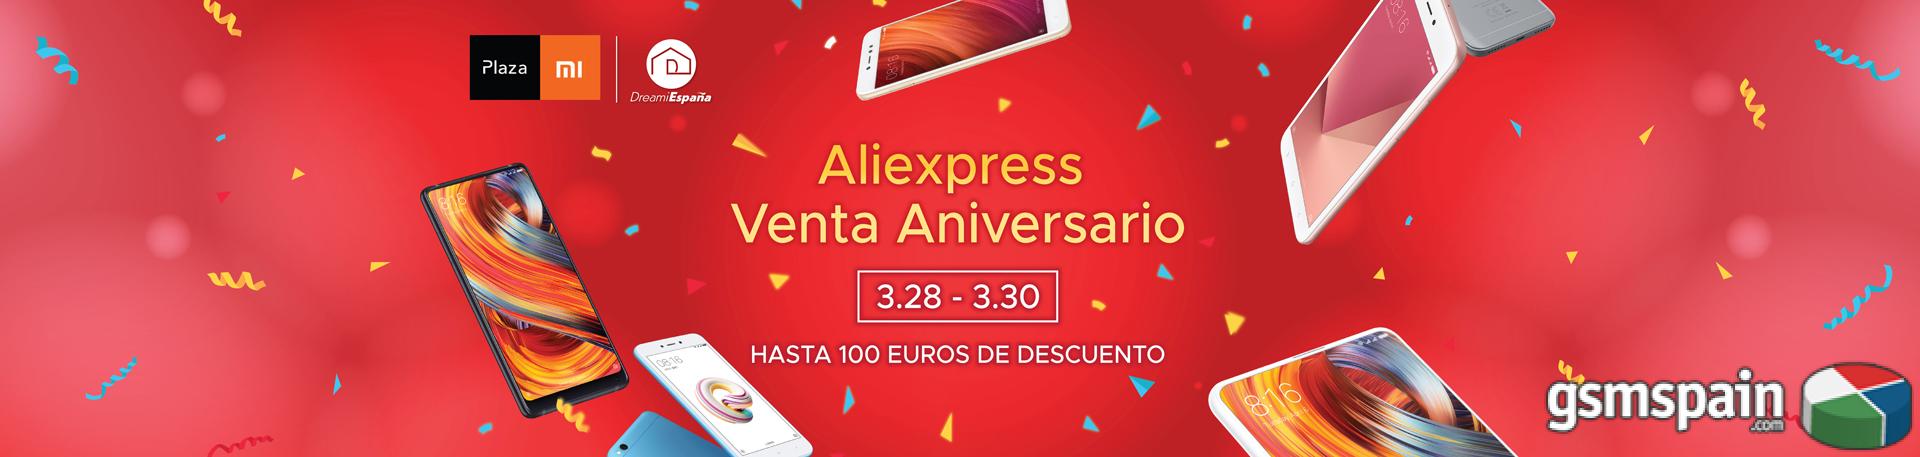 [VENDO] #### VENTA ANIVERSARIO AliExpress en nuestra tienda! DESCUENTOS 100! 28-30 MARZO!